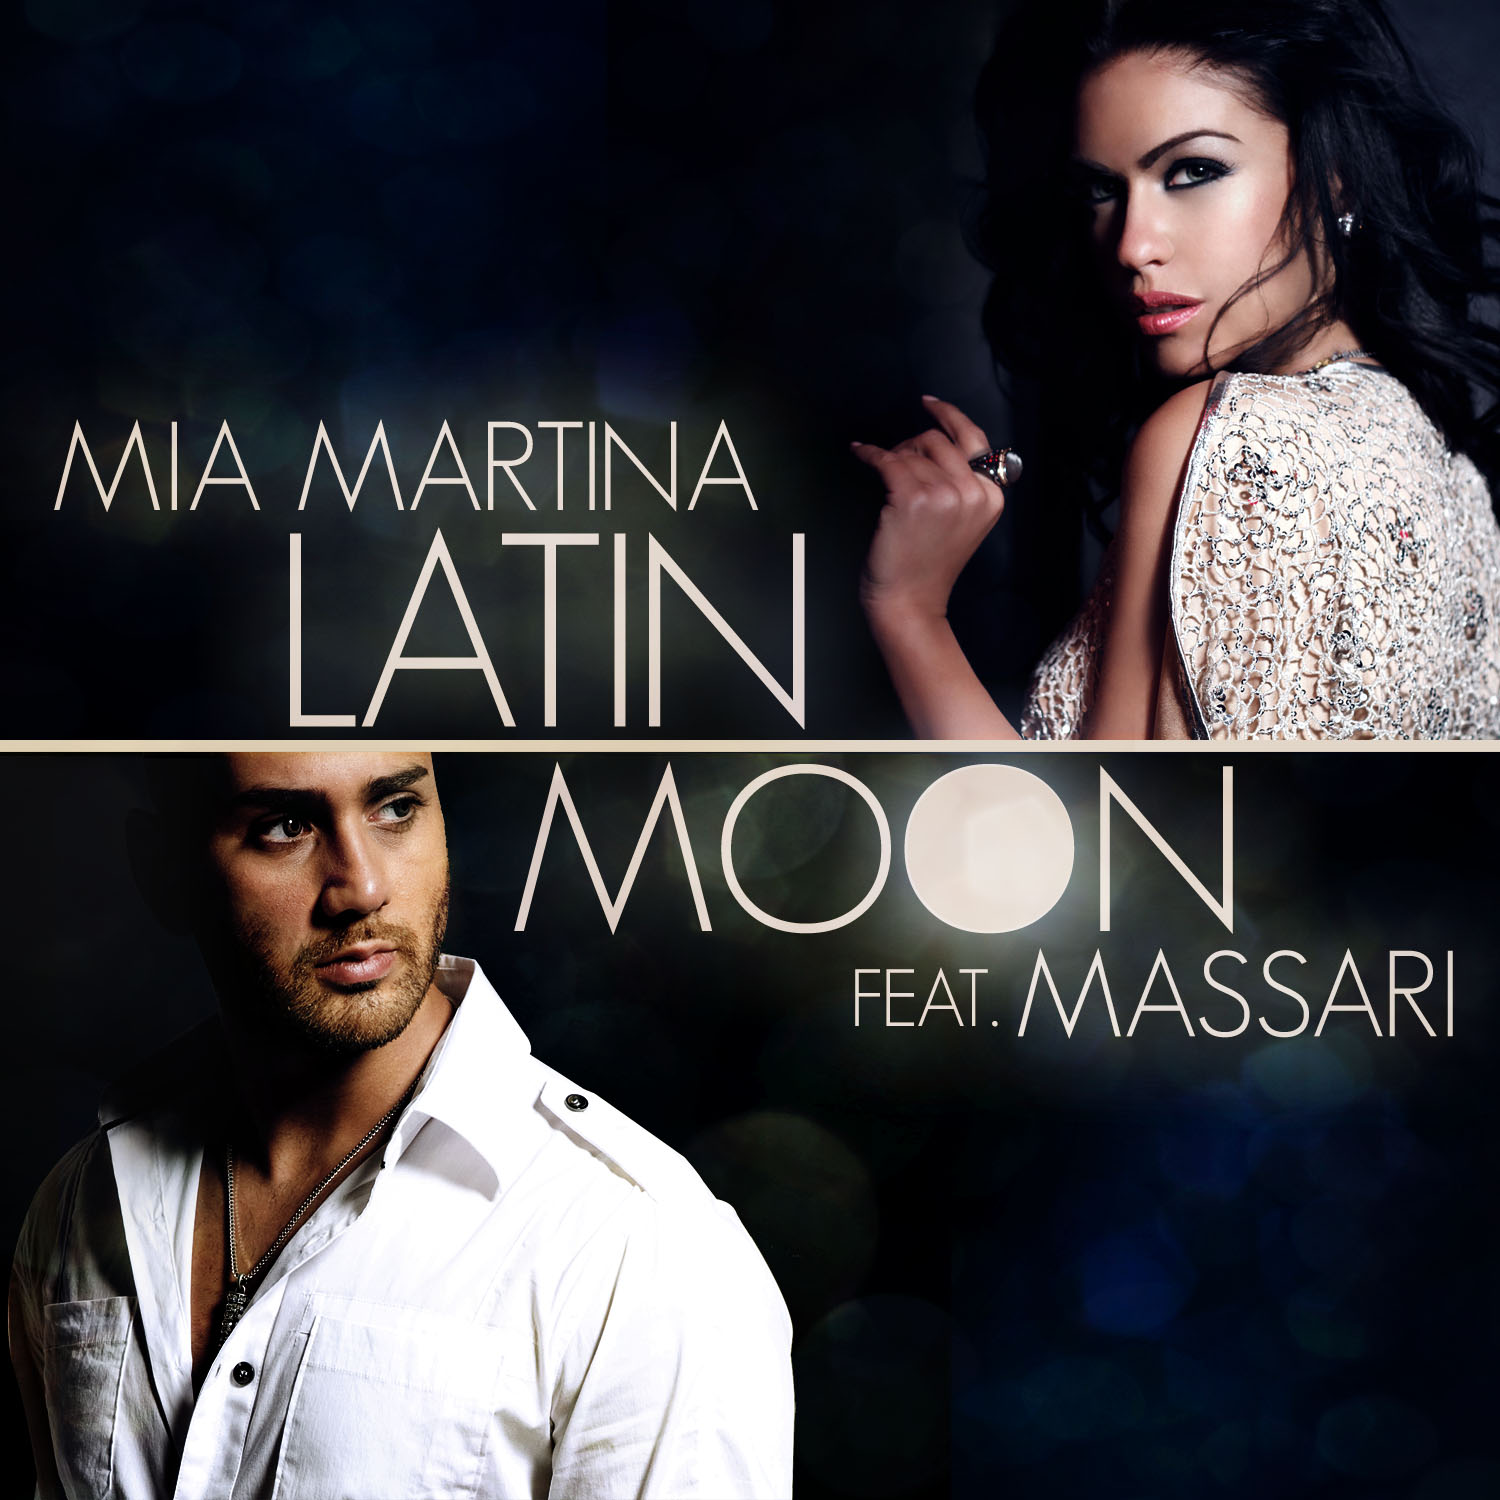 Mias feat. Mia Martina обложка. Мессари. Latin Moon.